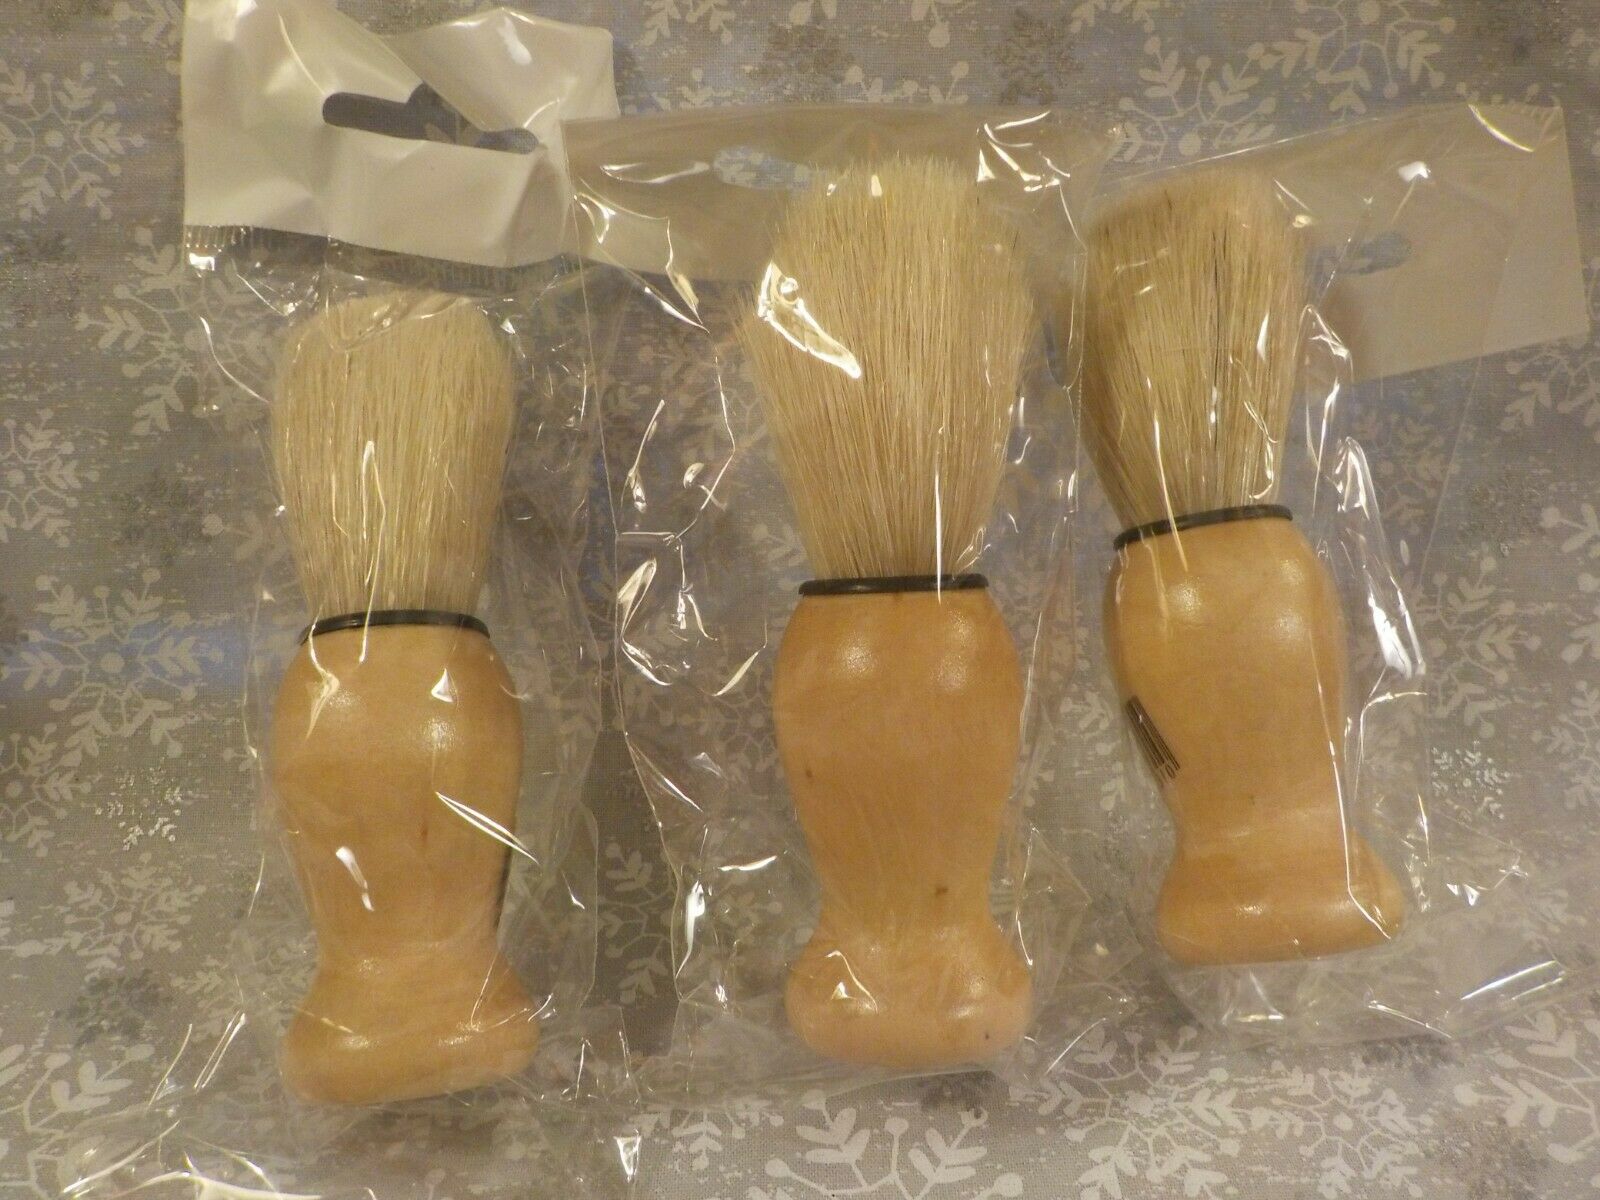 Three New-sealed Wood Handle Shaving Brush